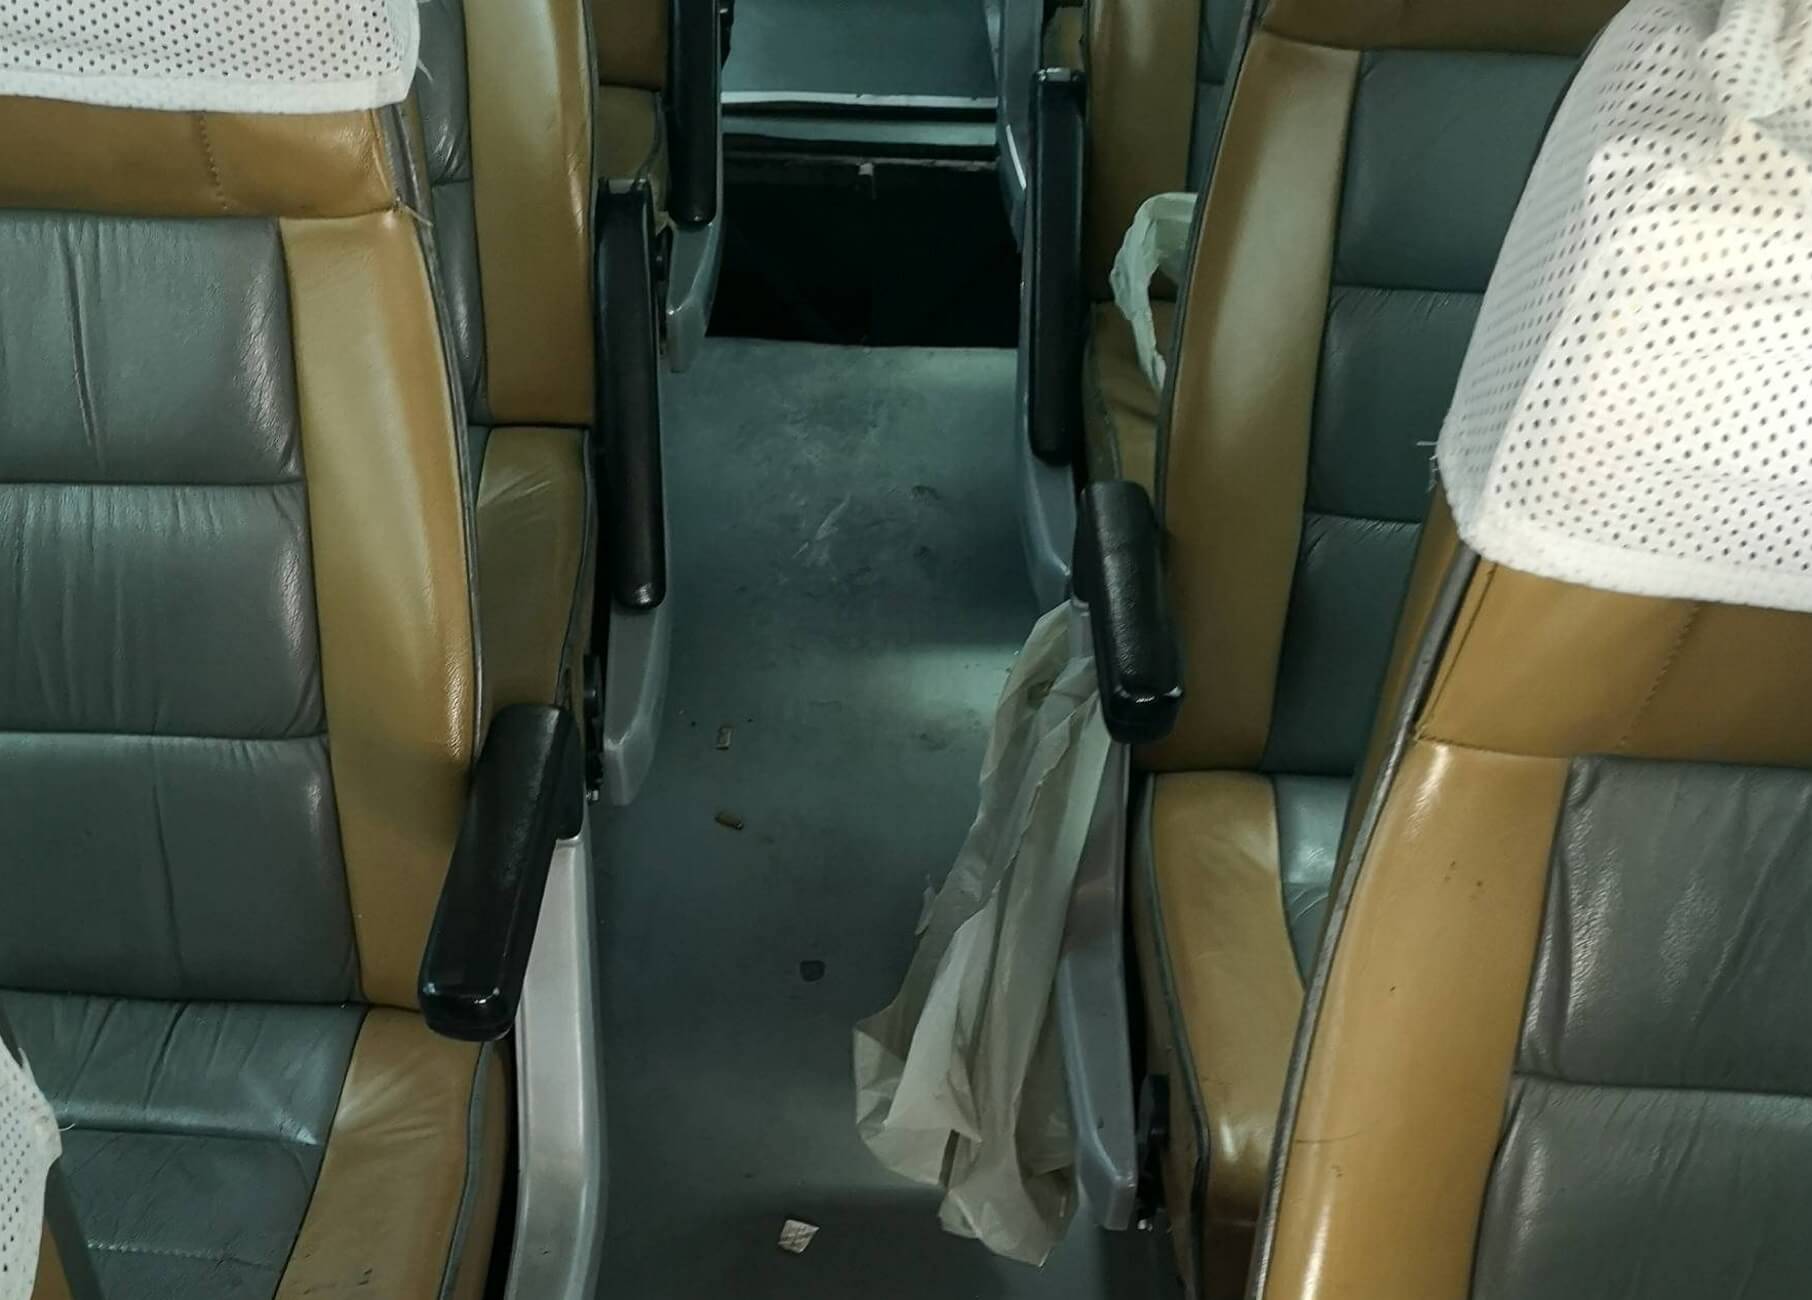 Έβρος: Οι εικόνες μέσα στο λεωφορείο που τους άφησαν άναυδους – Συνελήφθη ο οδηγός του [pics]